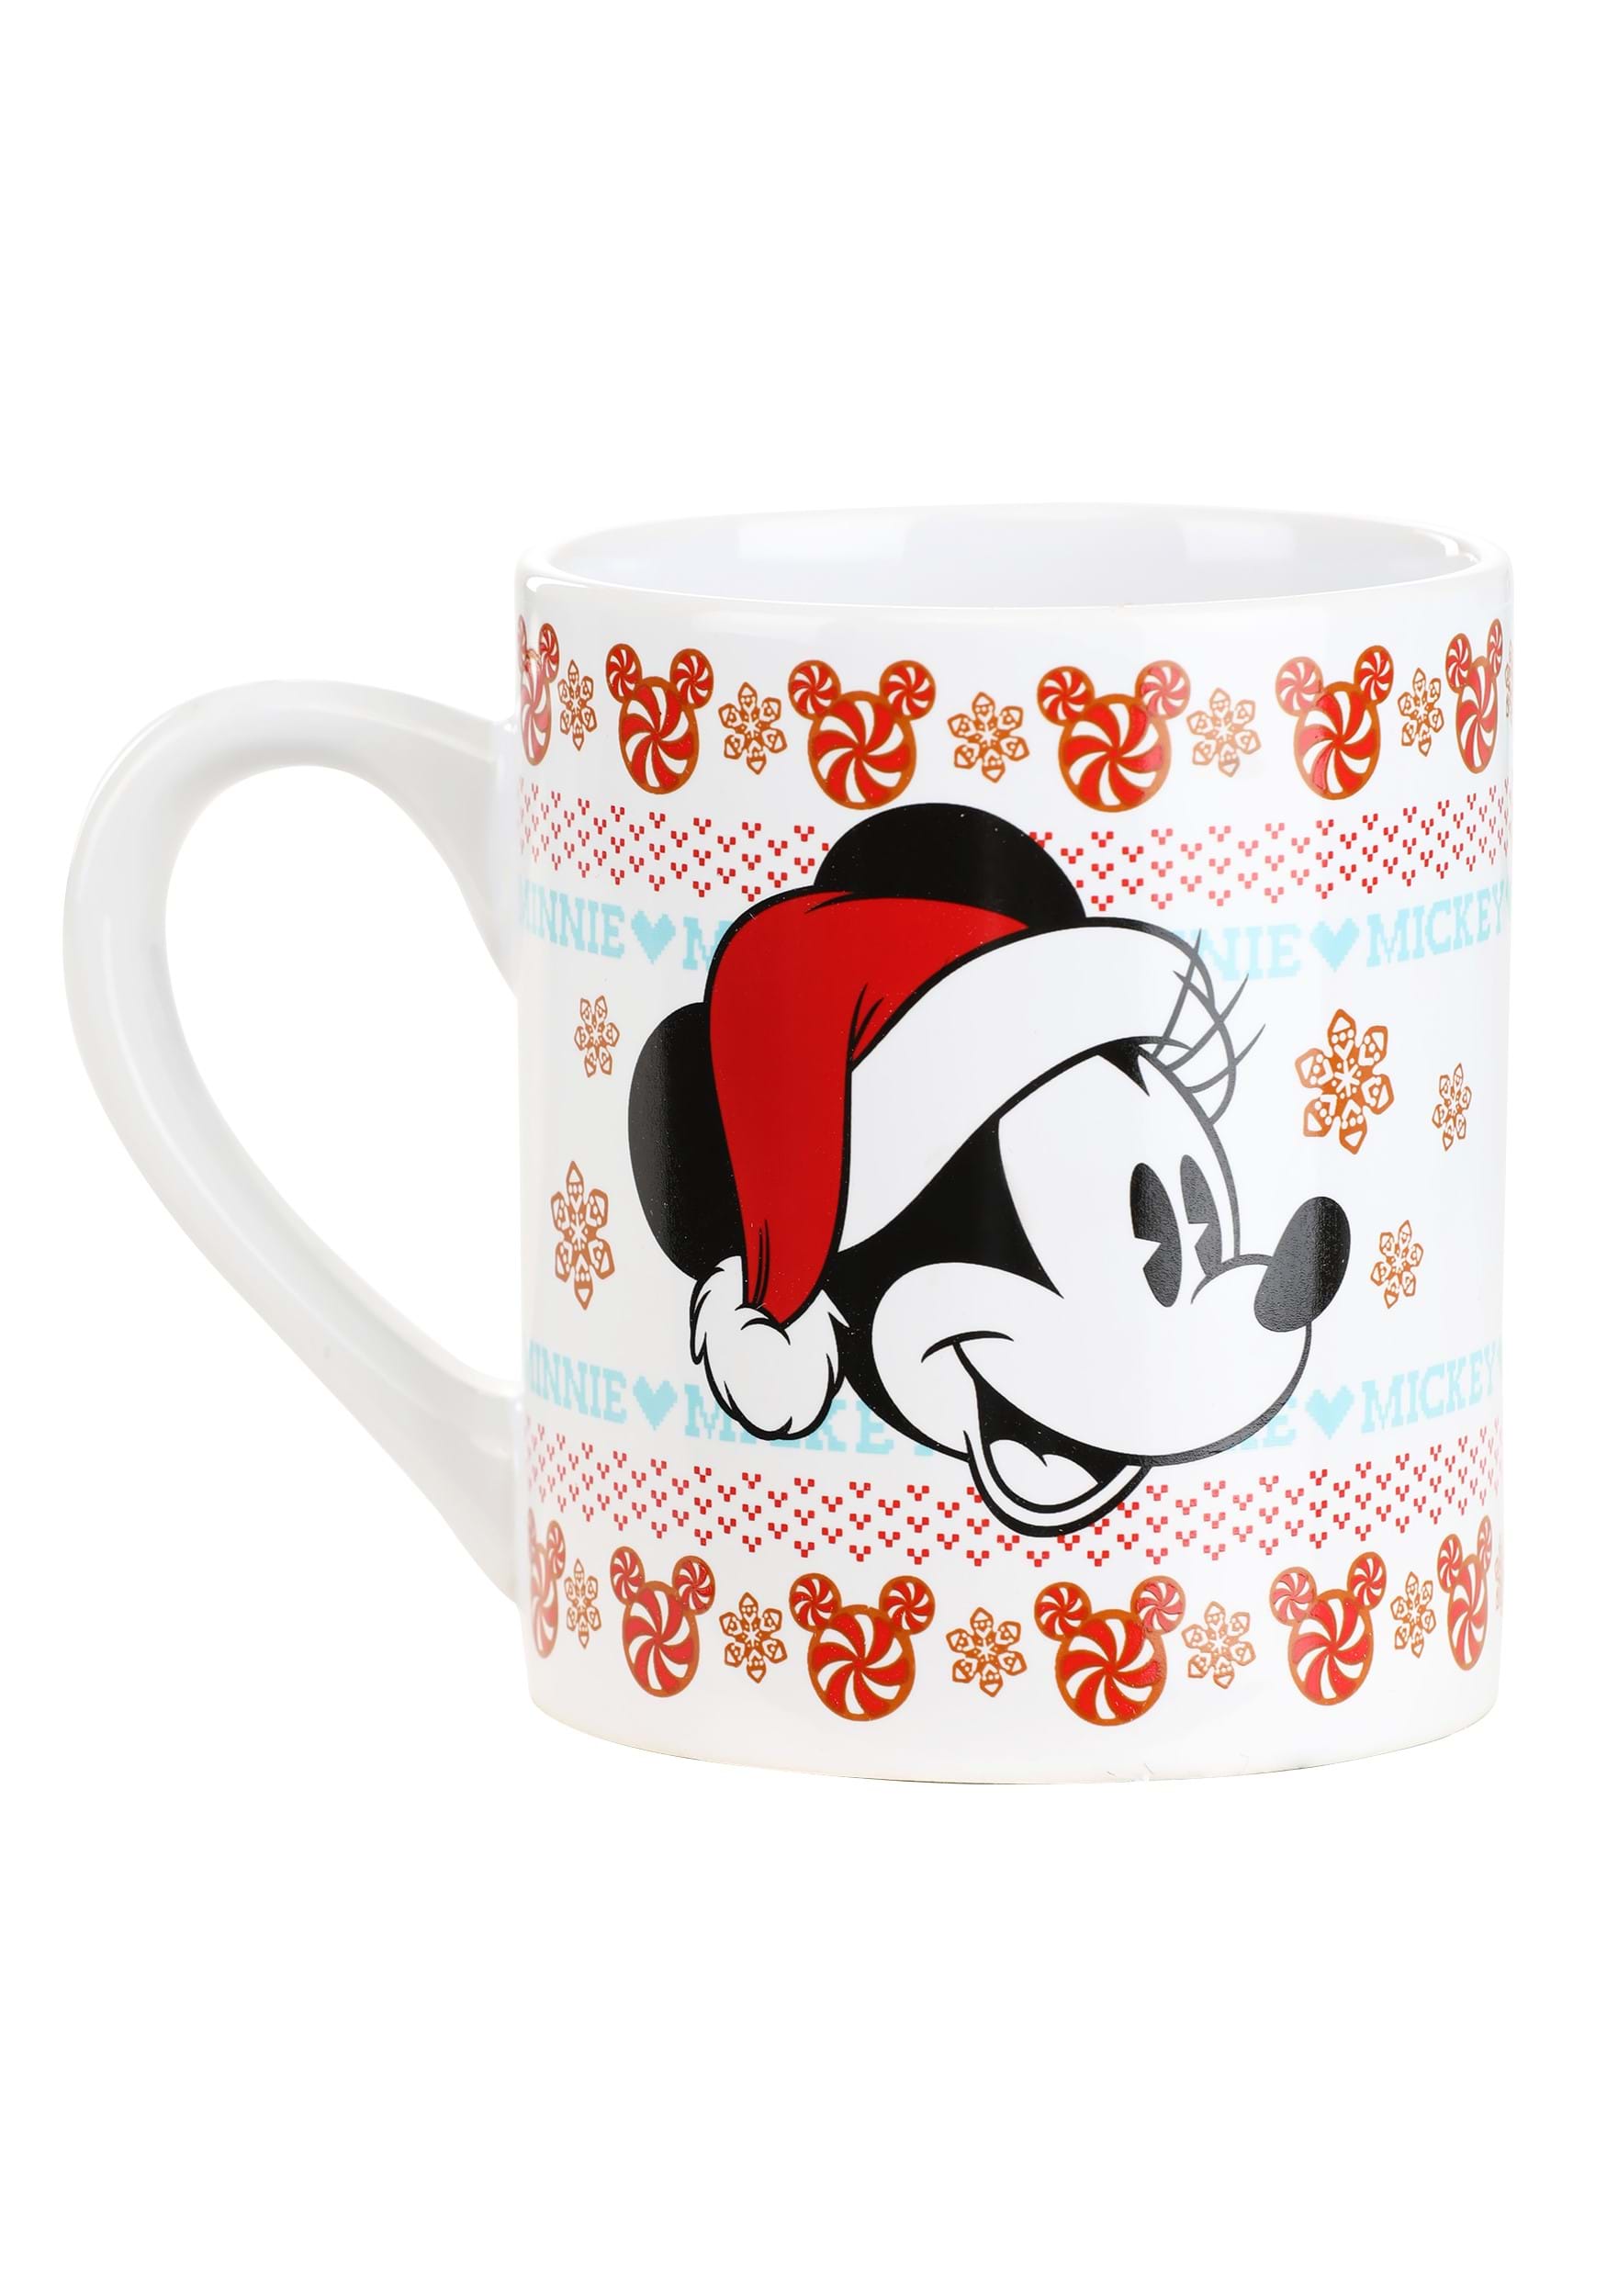 Disney Christmas 14oz Ceramic Mug 2 Pack